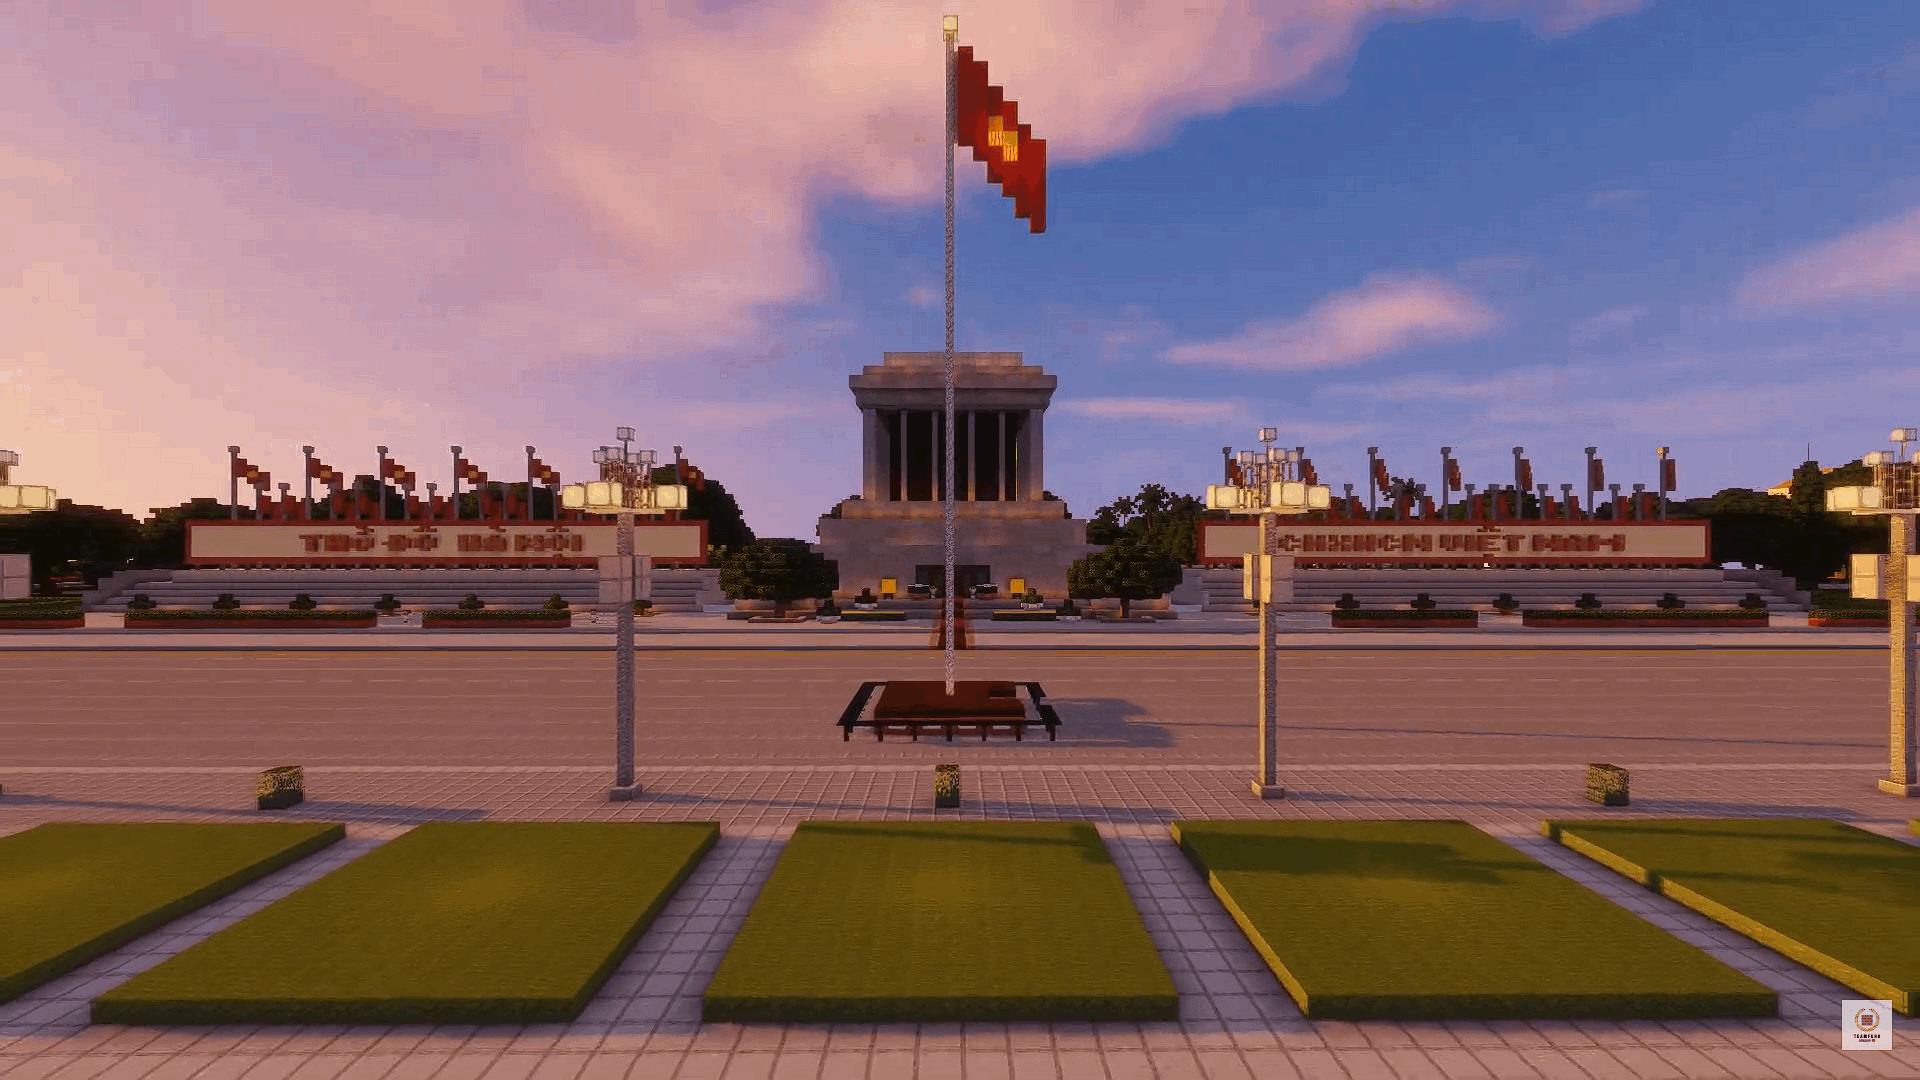 Minecraft tái hiện Lăng Bác: Bạn đã bao giờ tưởng tượng một buổi tham quan Lăng Chủ tịch Hồ Chí Minh trong game Minecraft chưa? Chính xác, chúng tôi đã tái hiện lại Lăng Bác trong game Minecraft, mang đến một cái nhìn mới lạ về công trình kiến trúc đẹp đẽ này. Hãy cùng điểm danh để được hưởng lợi từ những trò chơi và trải nghiệm đầy màu sắc này.